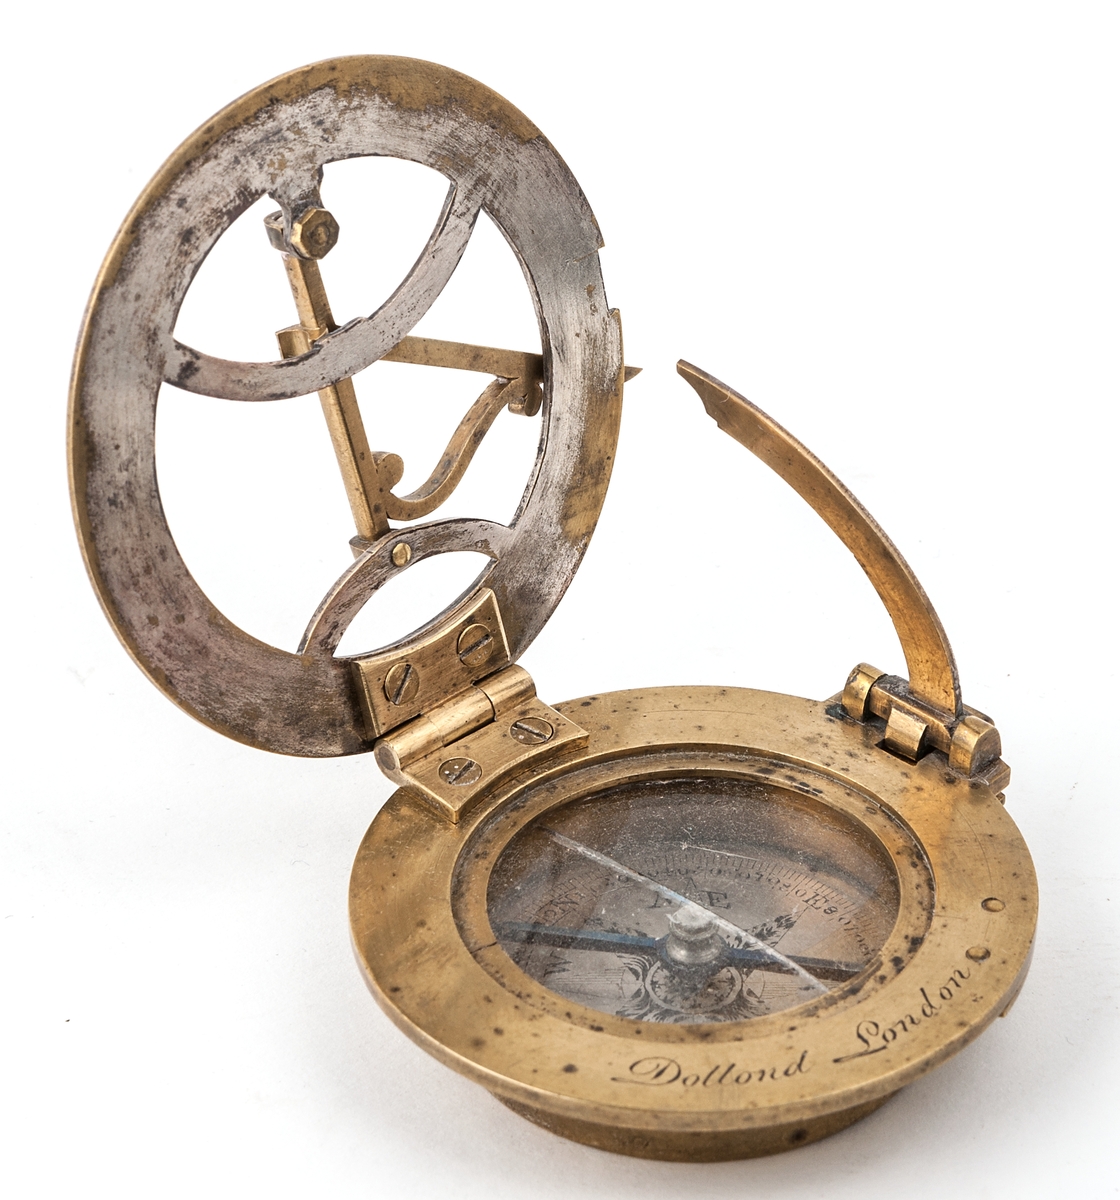 Kompass, av mässing, från Dollond London.
Glaset över kompassnålen är spräckt.
Förvaras i röd skinnask.